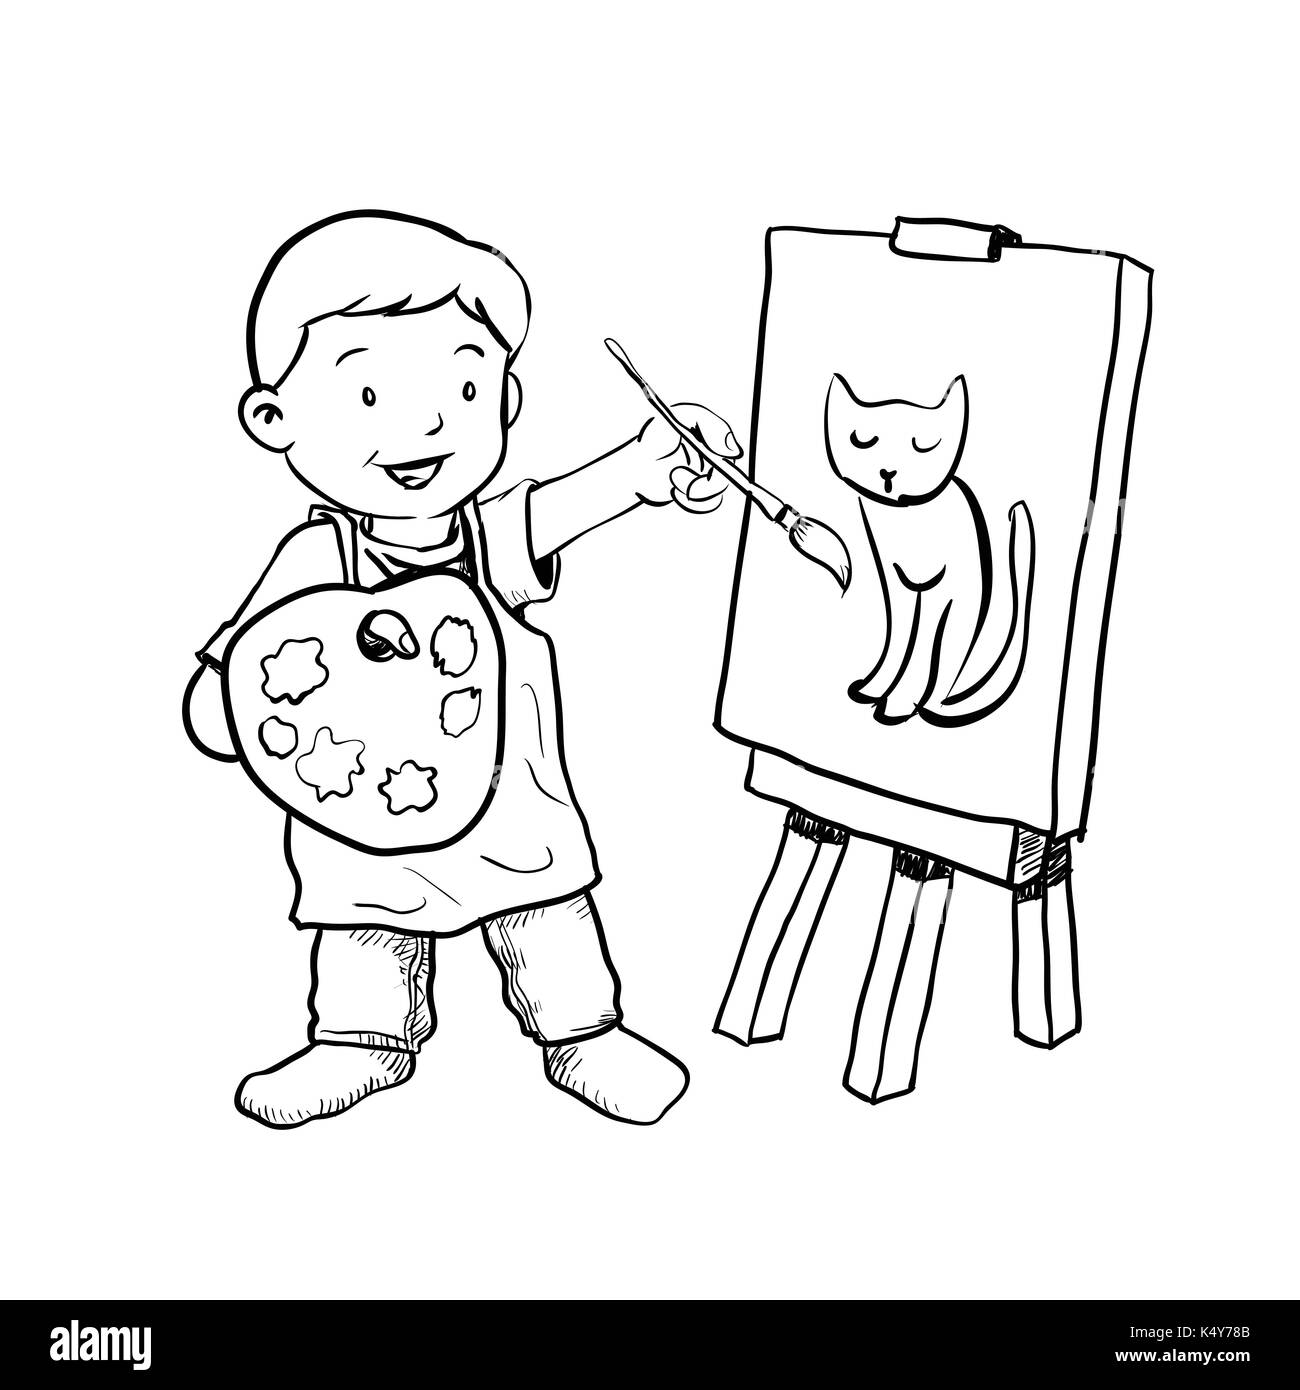 Disegno a mano di cartoon boy pittore isolato su sfondo bianco in bianco e nero linea semplice illustrazione vettoriale per libro da colorare - linea tracciata vecto Illustrazione Vettoriale